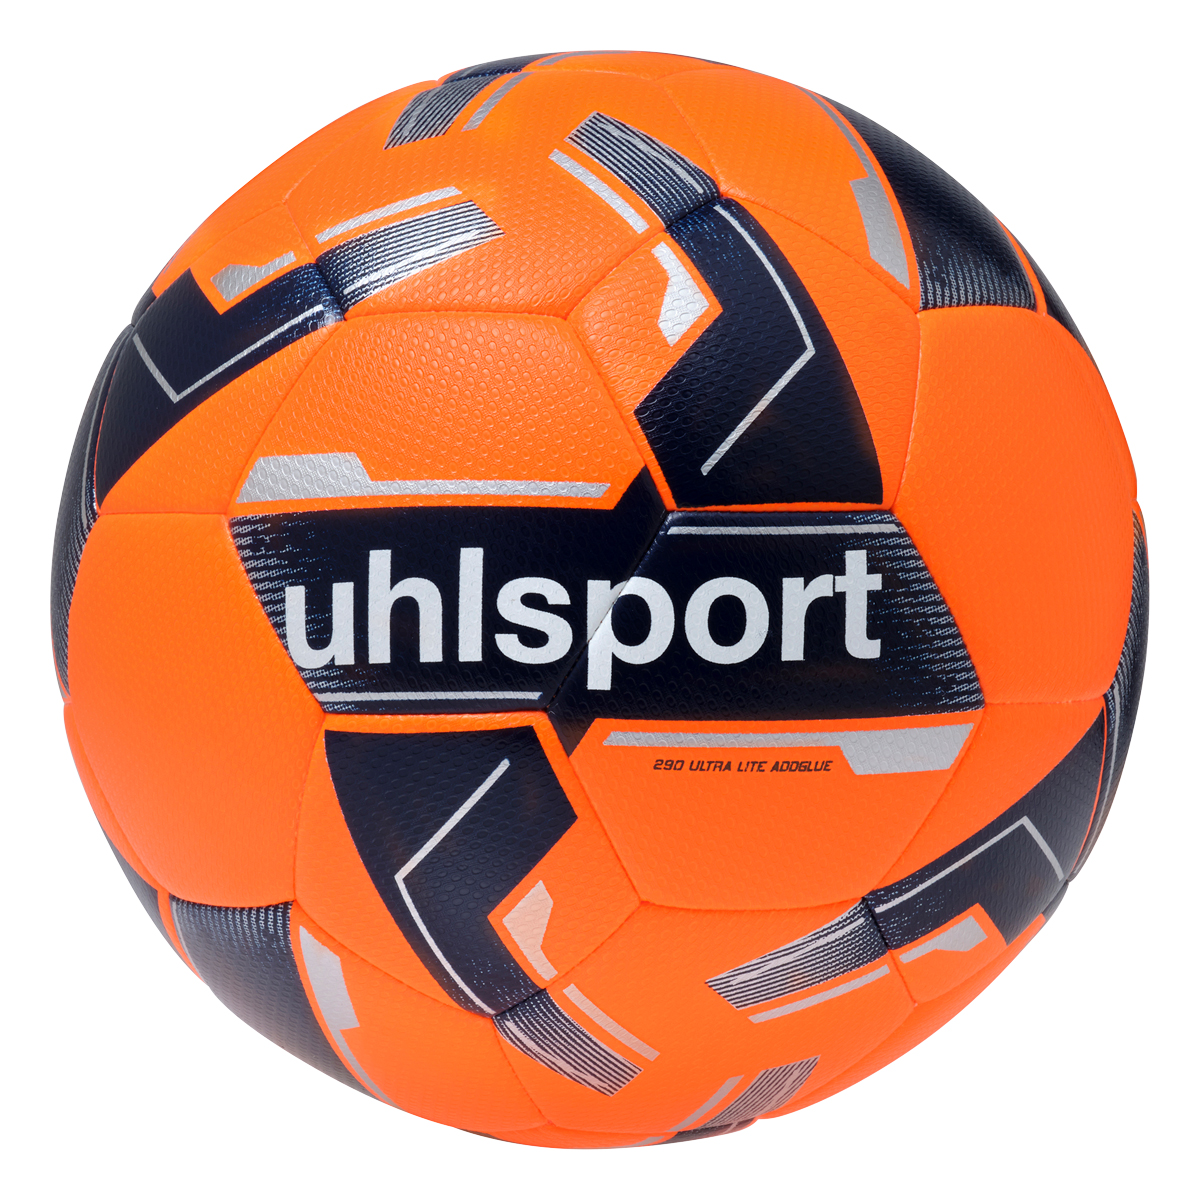 uhlsport Fußball 290 Ultra Lite Addglue fluo orange/marine/silber